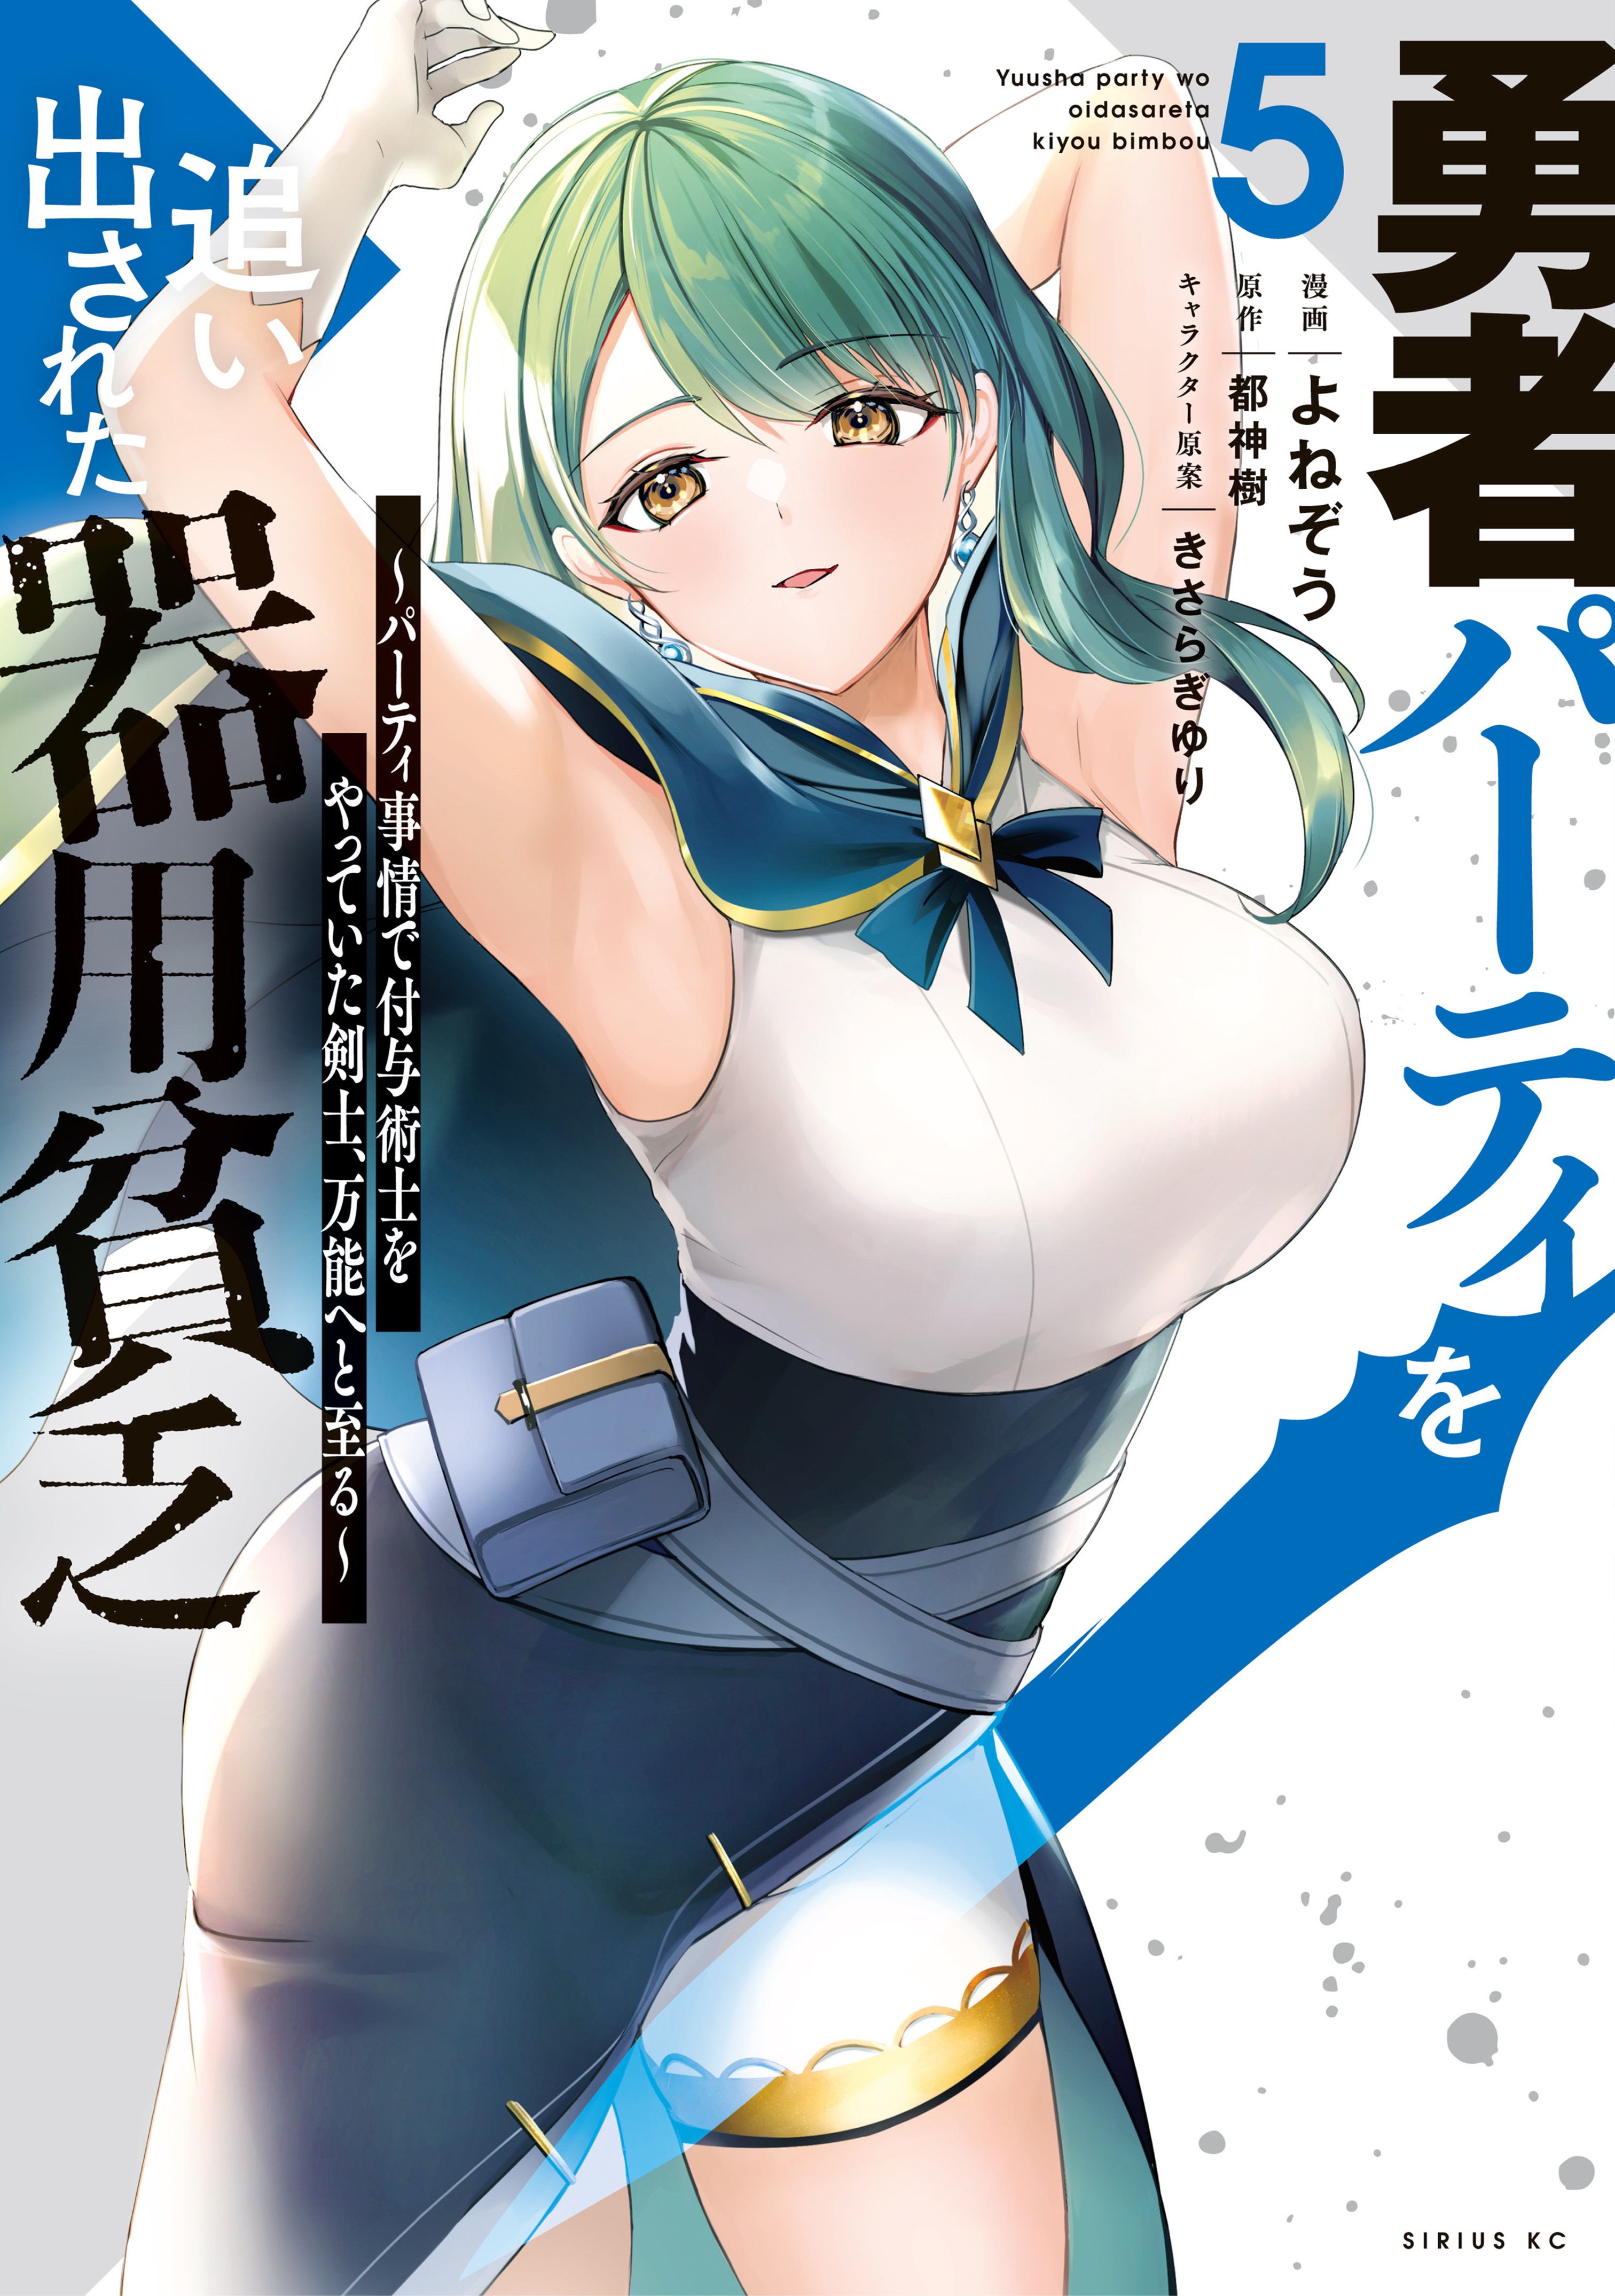 Read Yuusha Party O Oida Sareta Kiyou Binbou Chapter 12 - MangaFreak